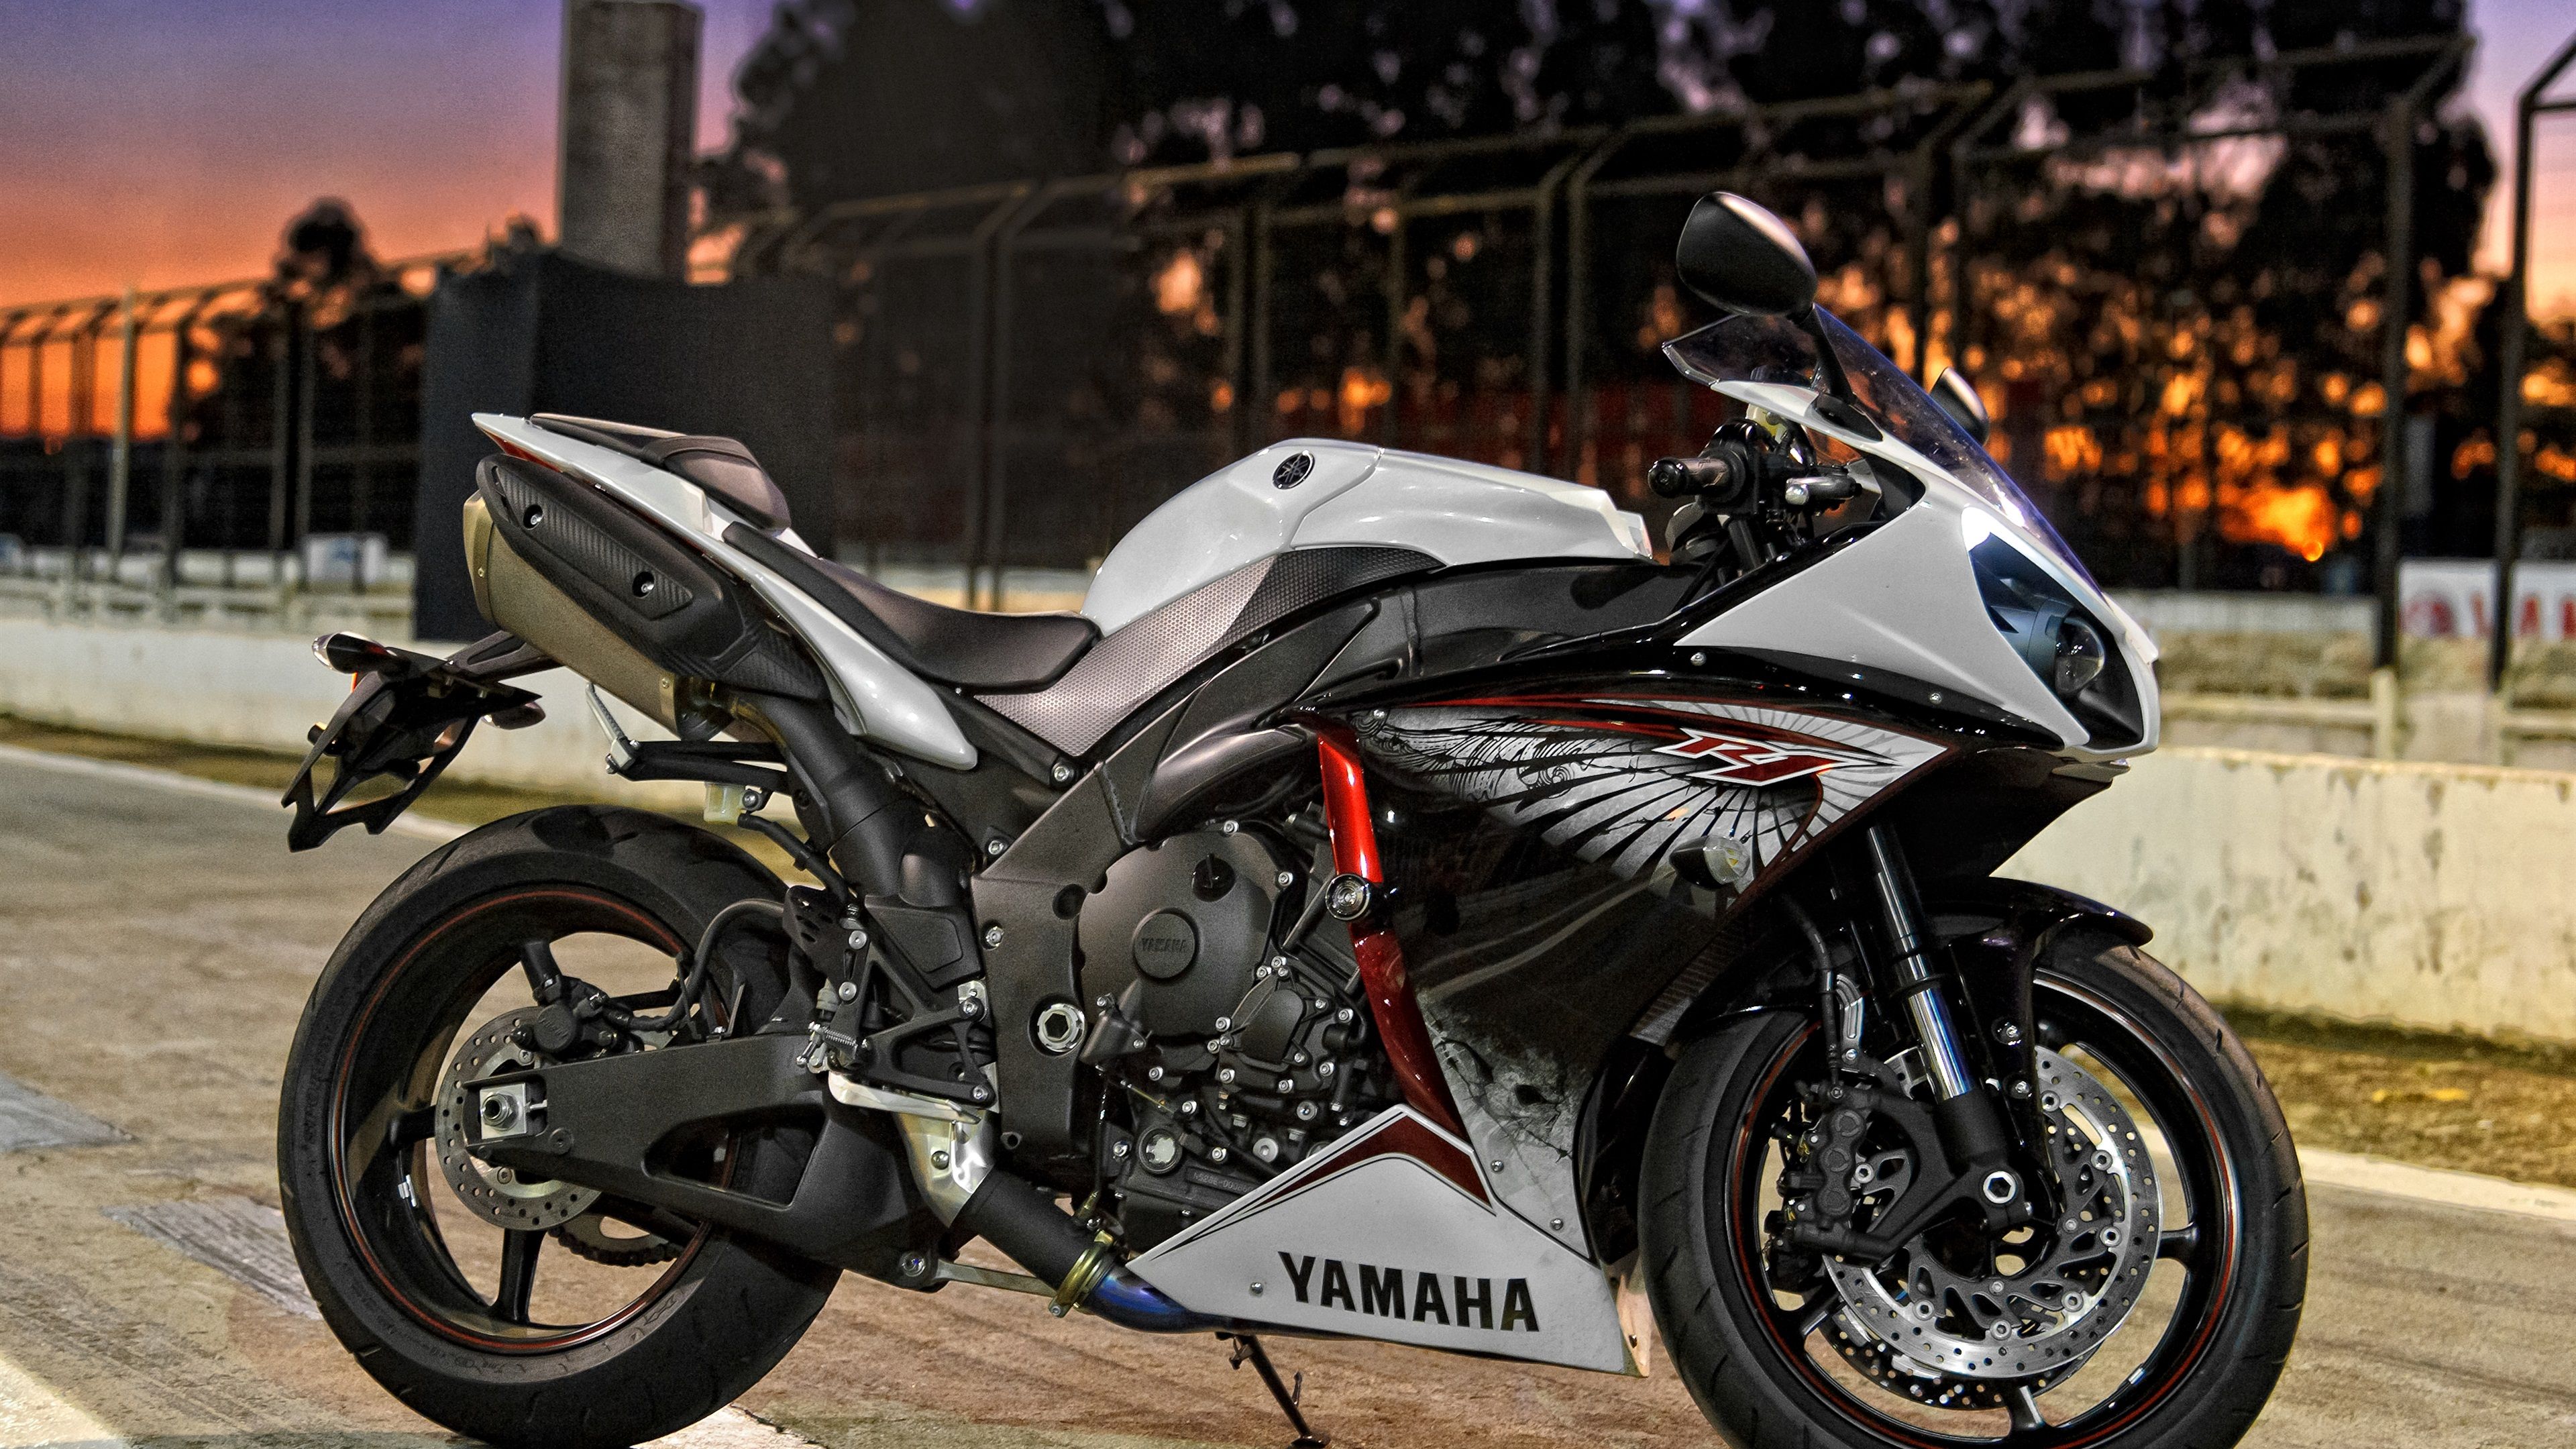 Wallpaper Yamaha motorcycle at night city street 3840x2160 UHD 4K